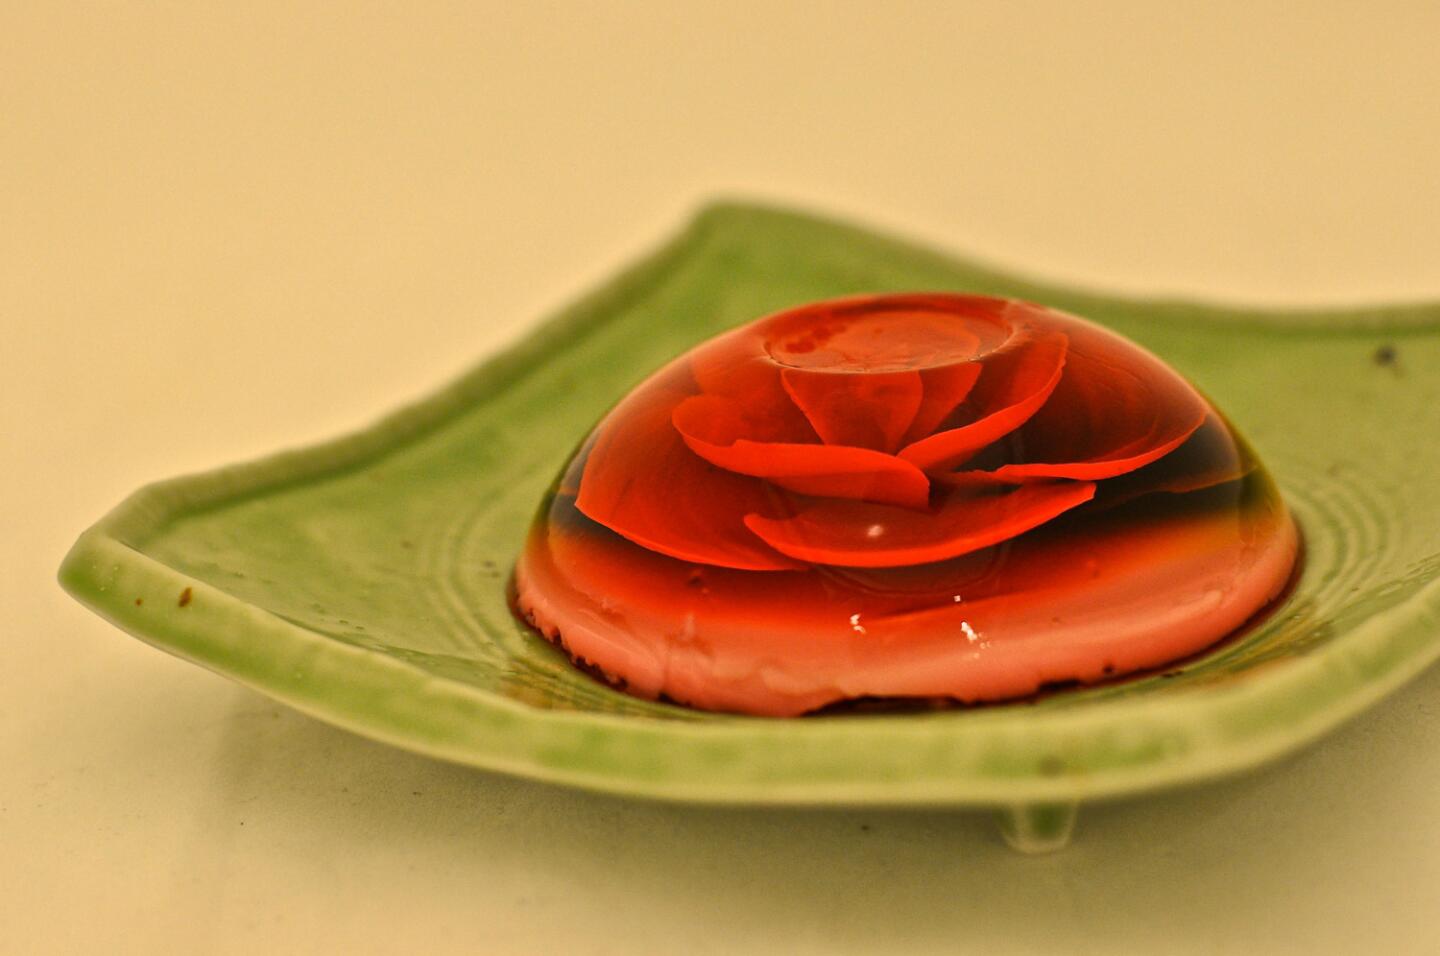 One of Mimi Guzman's gelatin flowers.